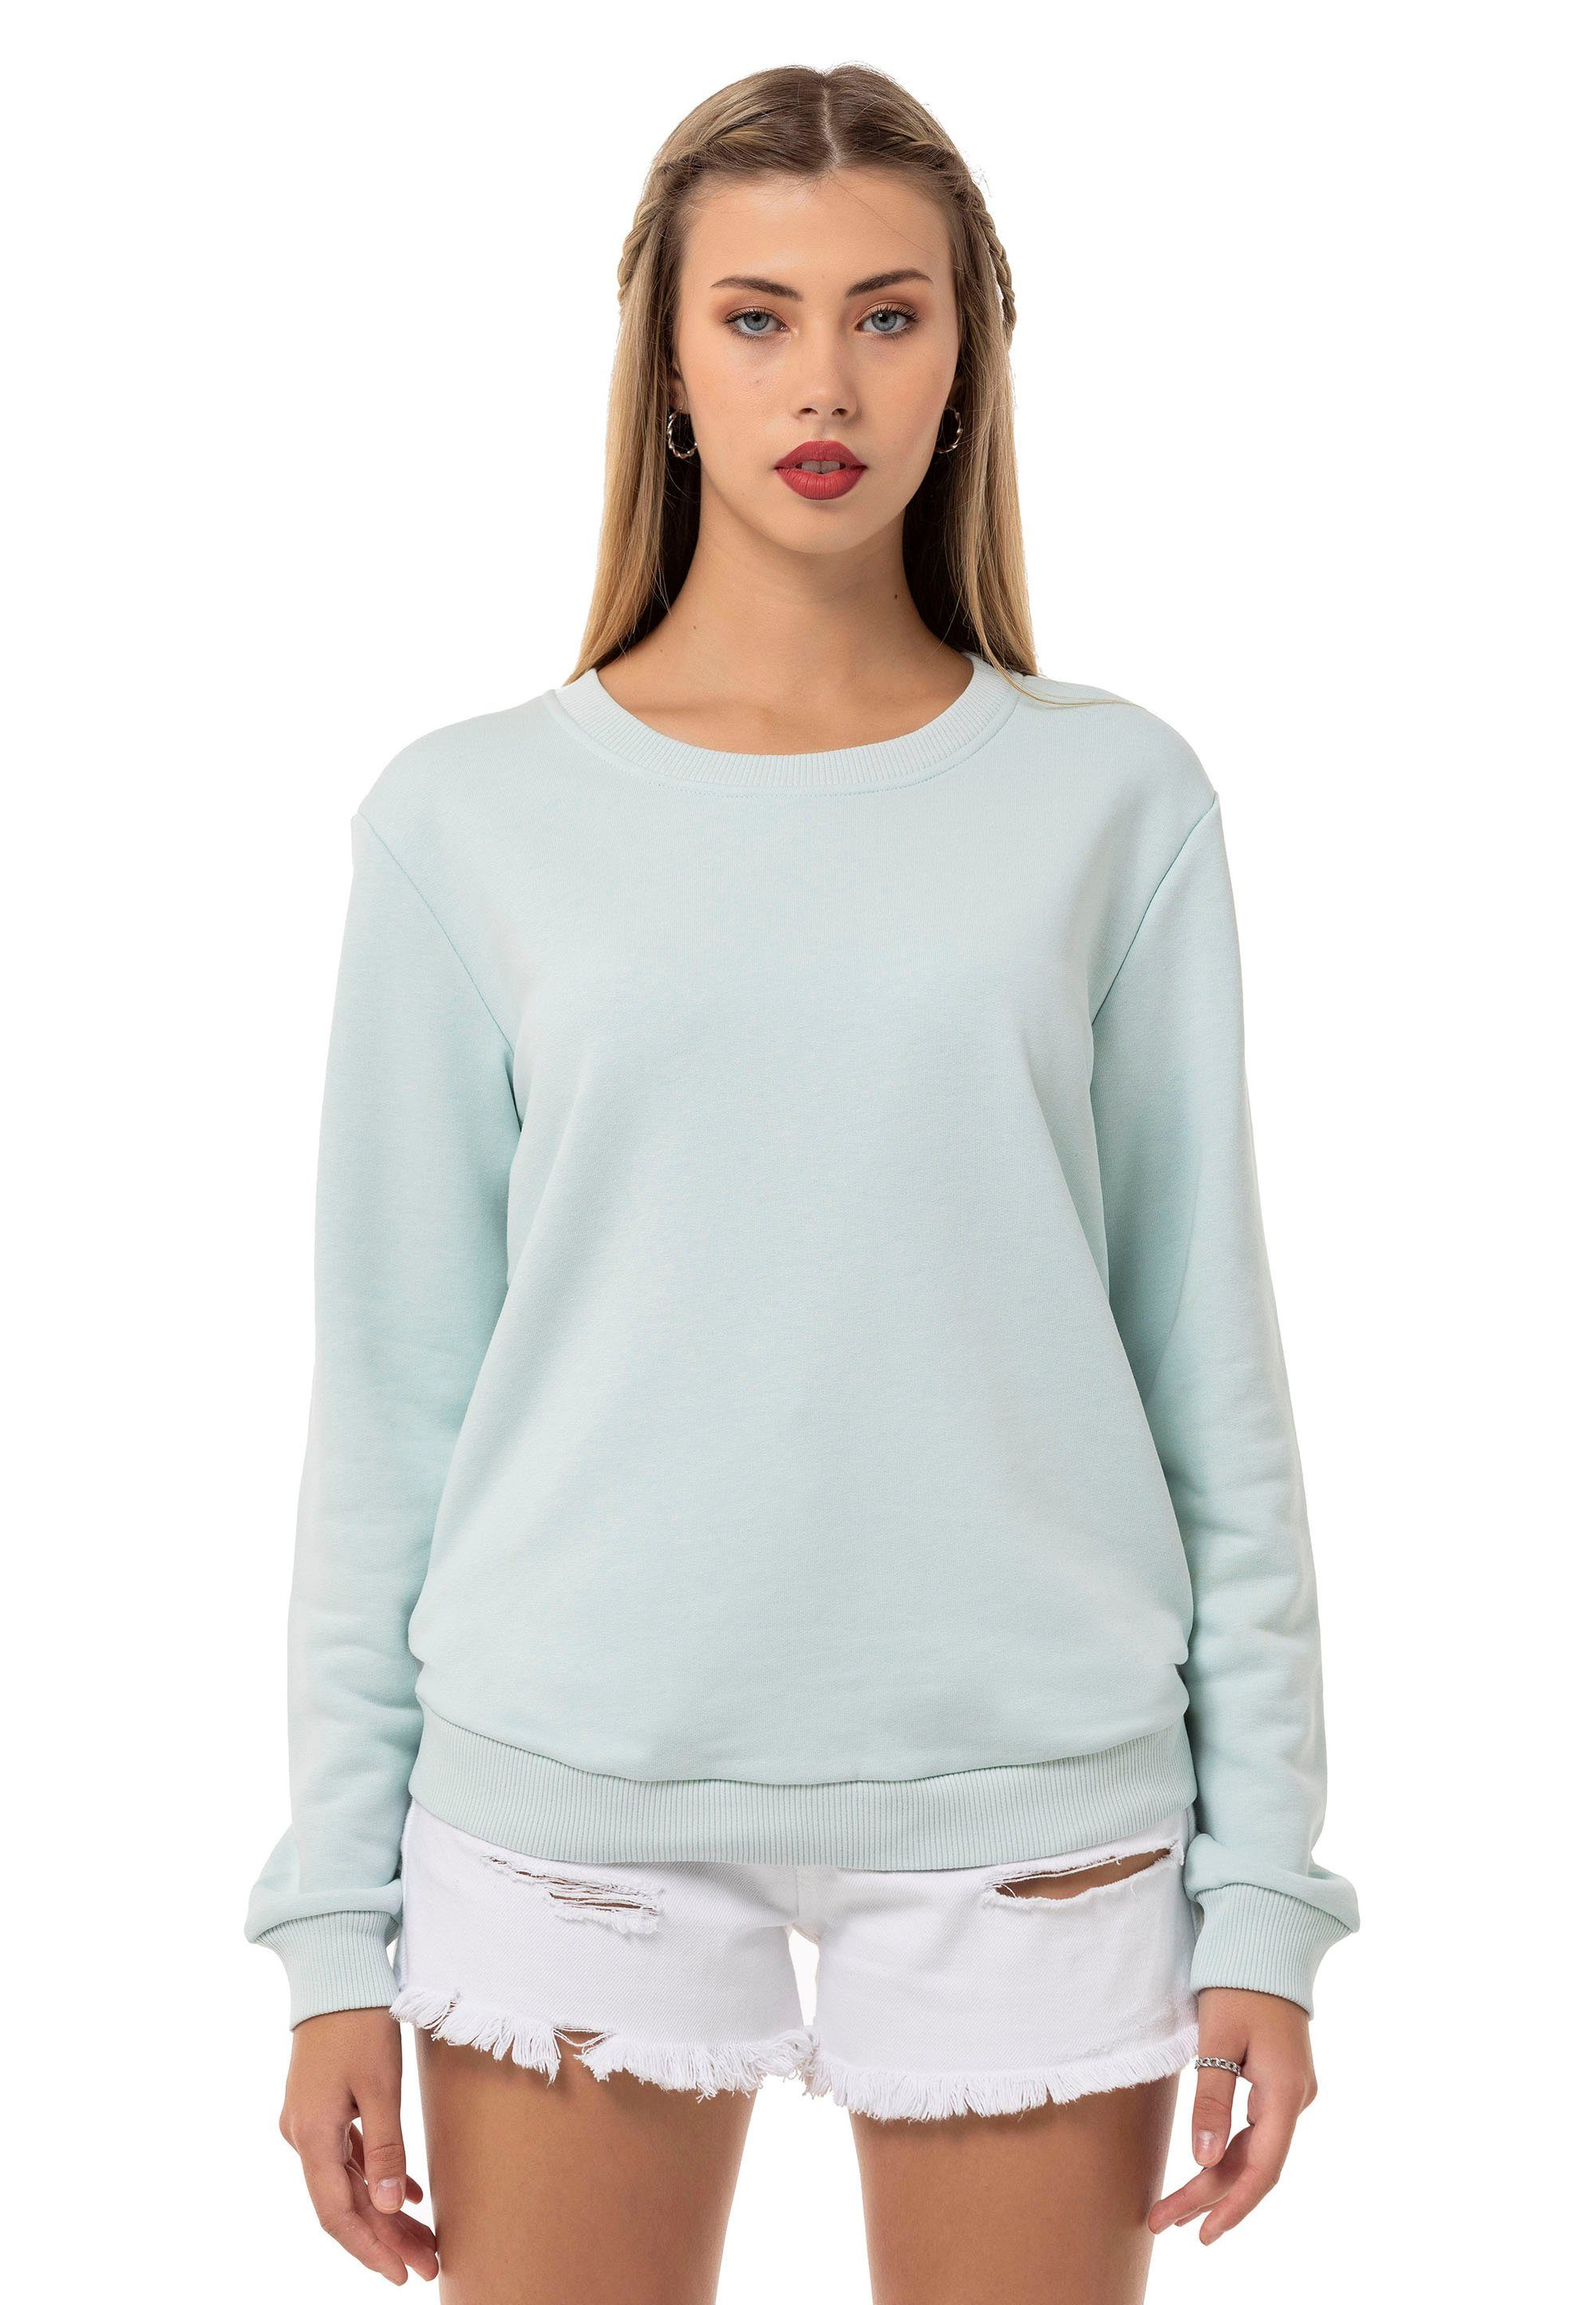 Mint RedBridge Qualität Premium Sweatshirt Rundhals Pullover